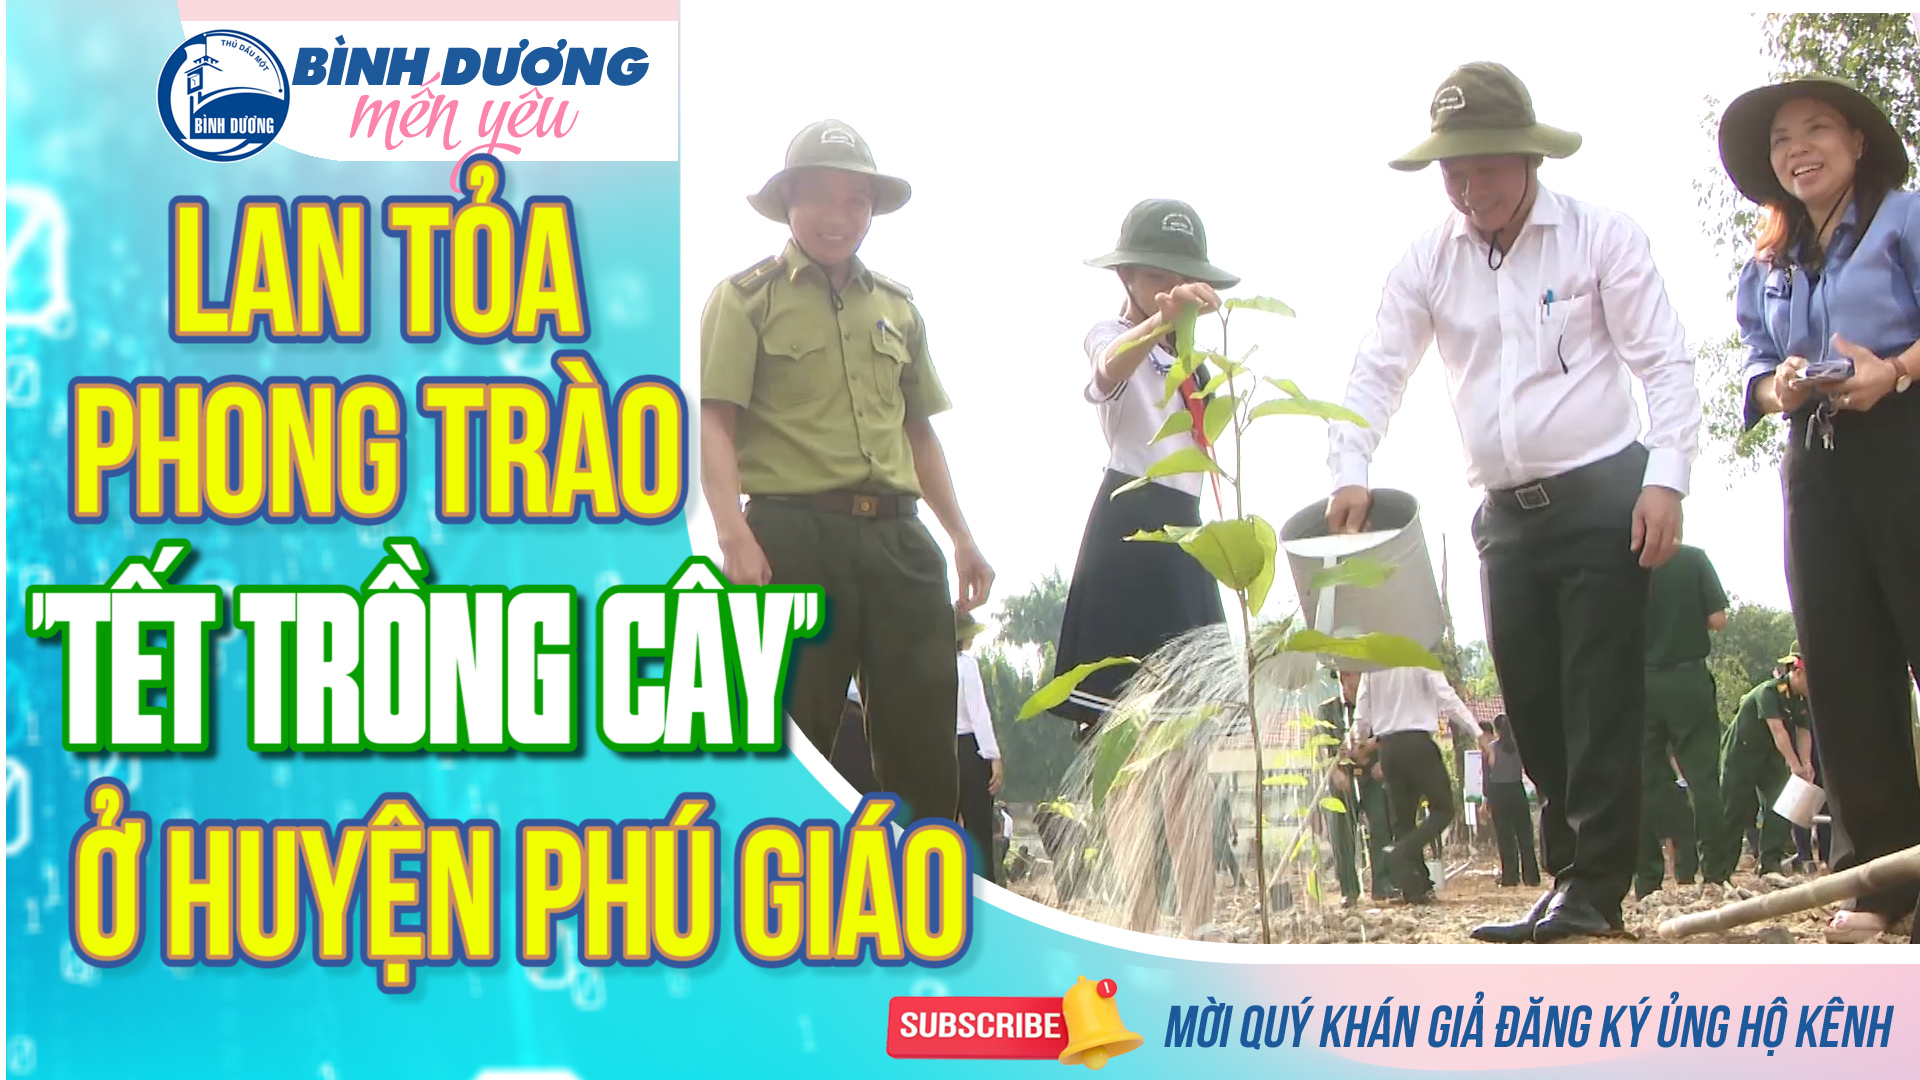 Lan tỏa phong trào “TẾT TRỒNG CÂY” ở huyện Phú Giáo || Bình Dương mến yêu